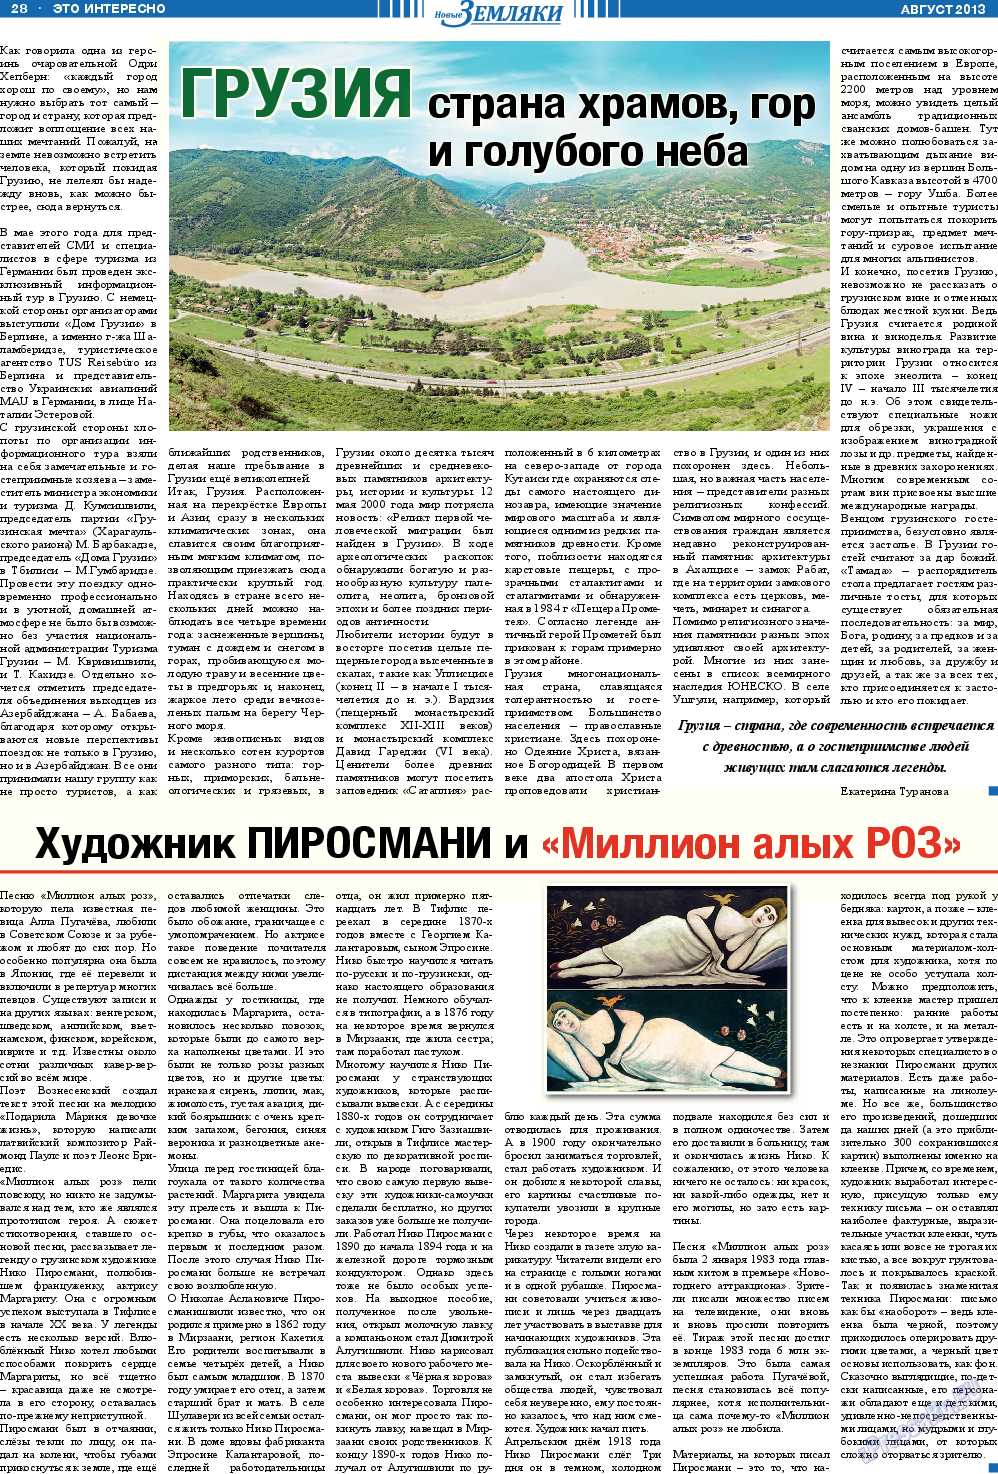 Новые Земляки, газета. 2013 №8 стр.28